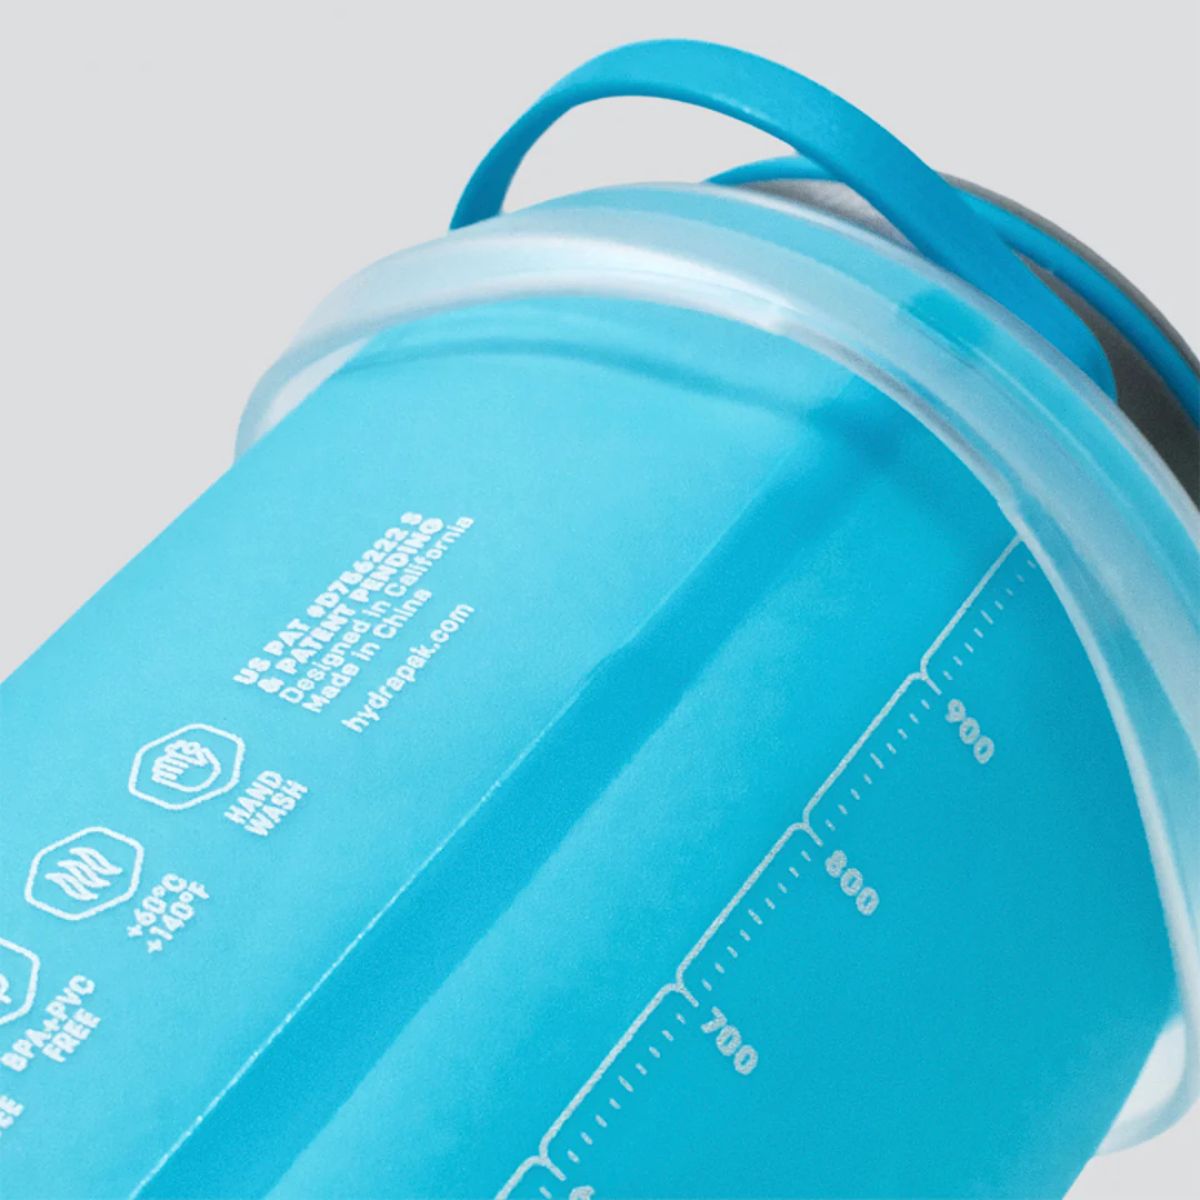 Stash™ Flexible Bottle - Malibu Blue - 1L 6